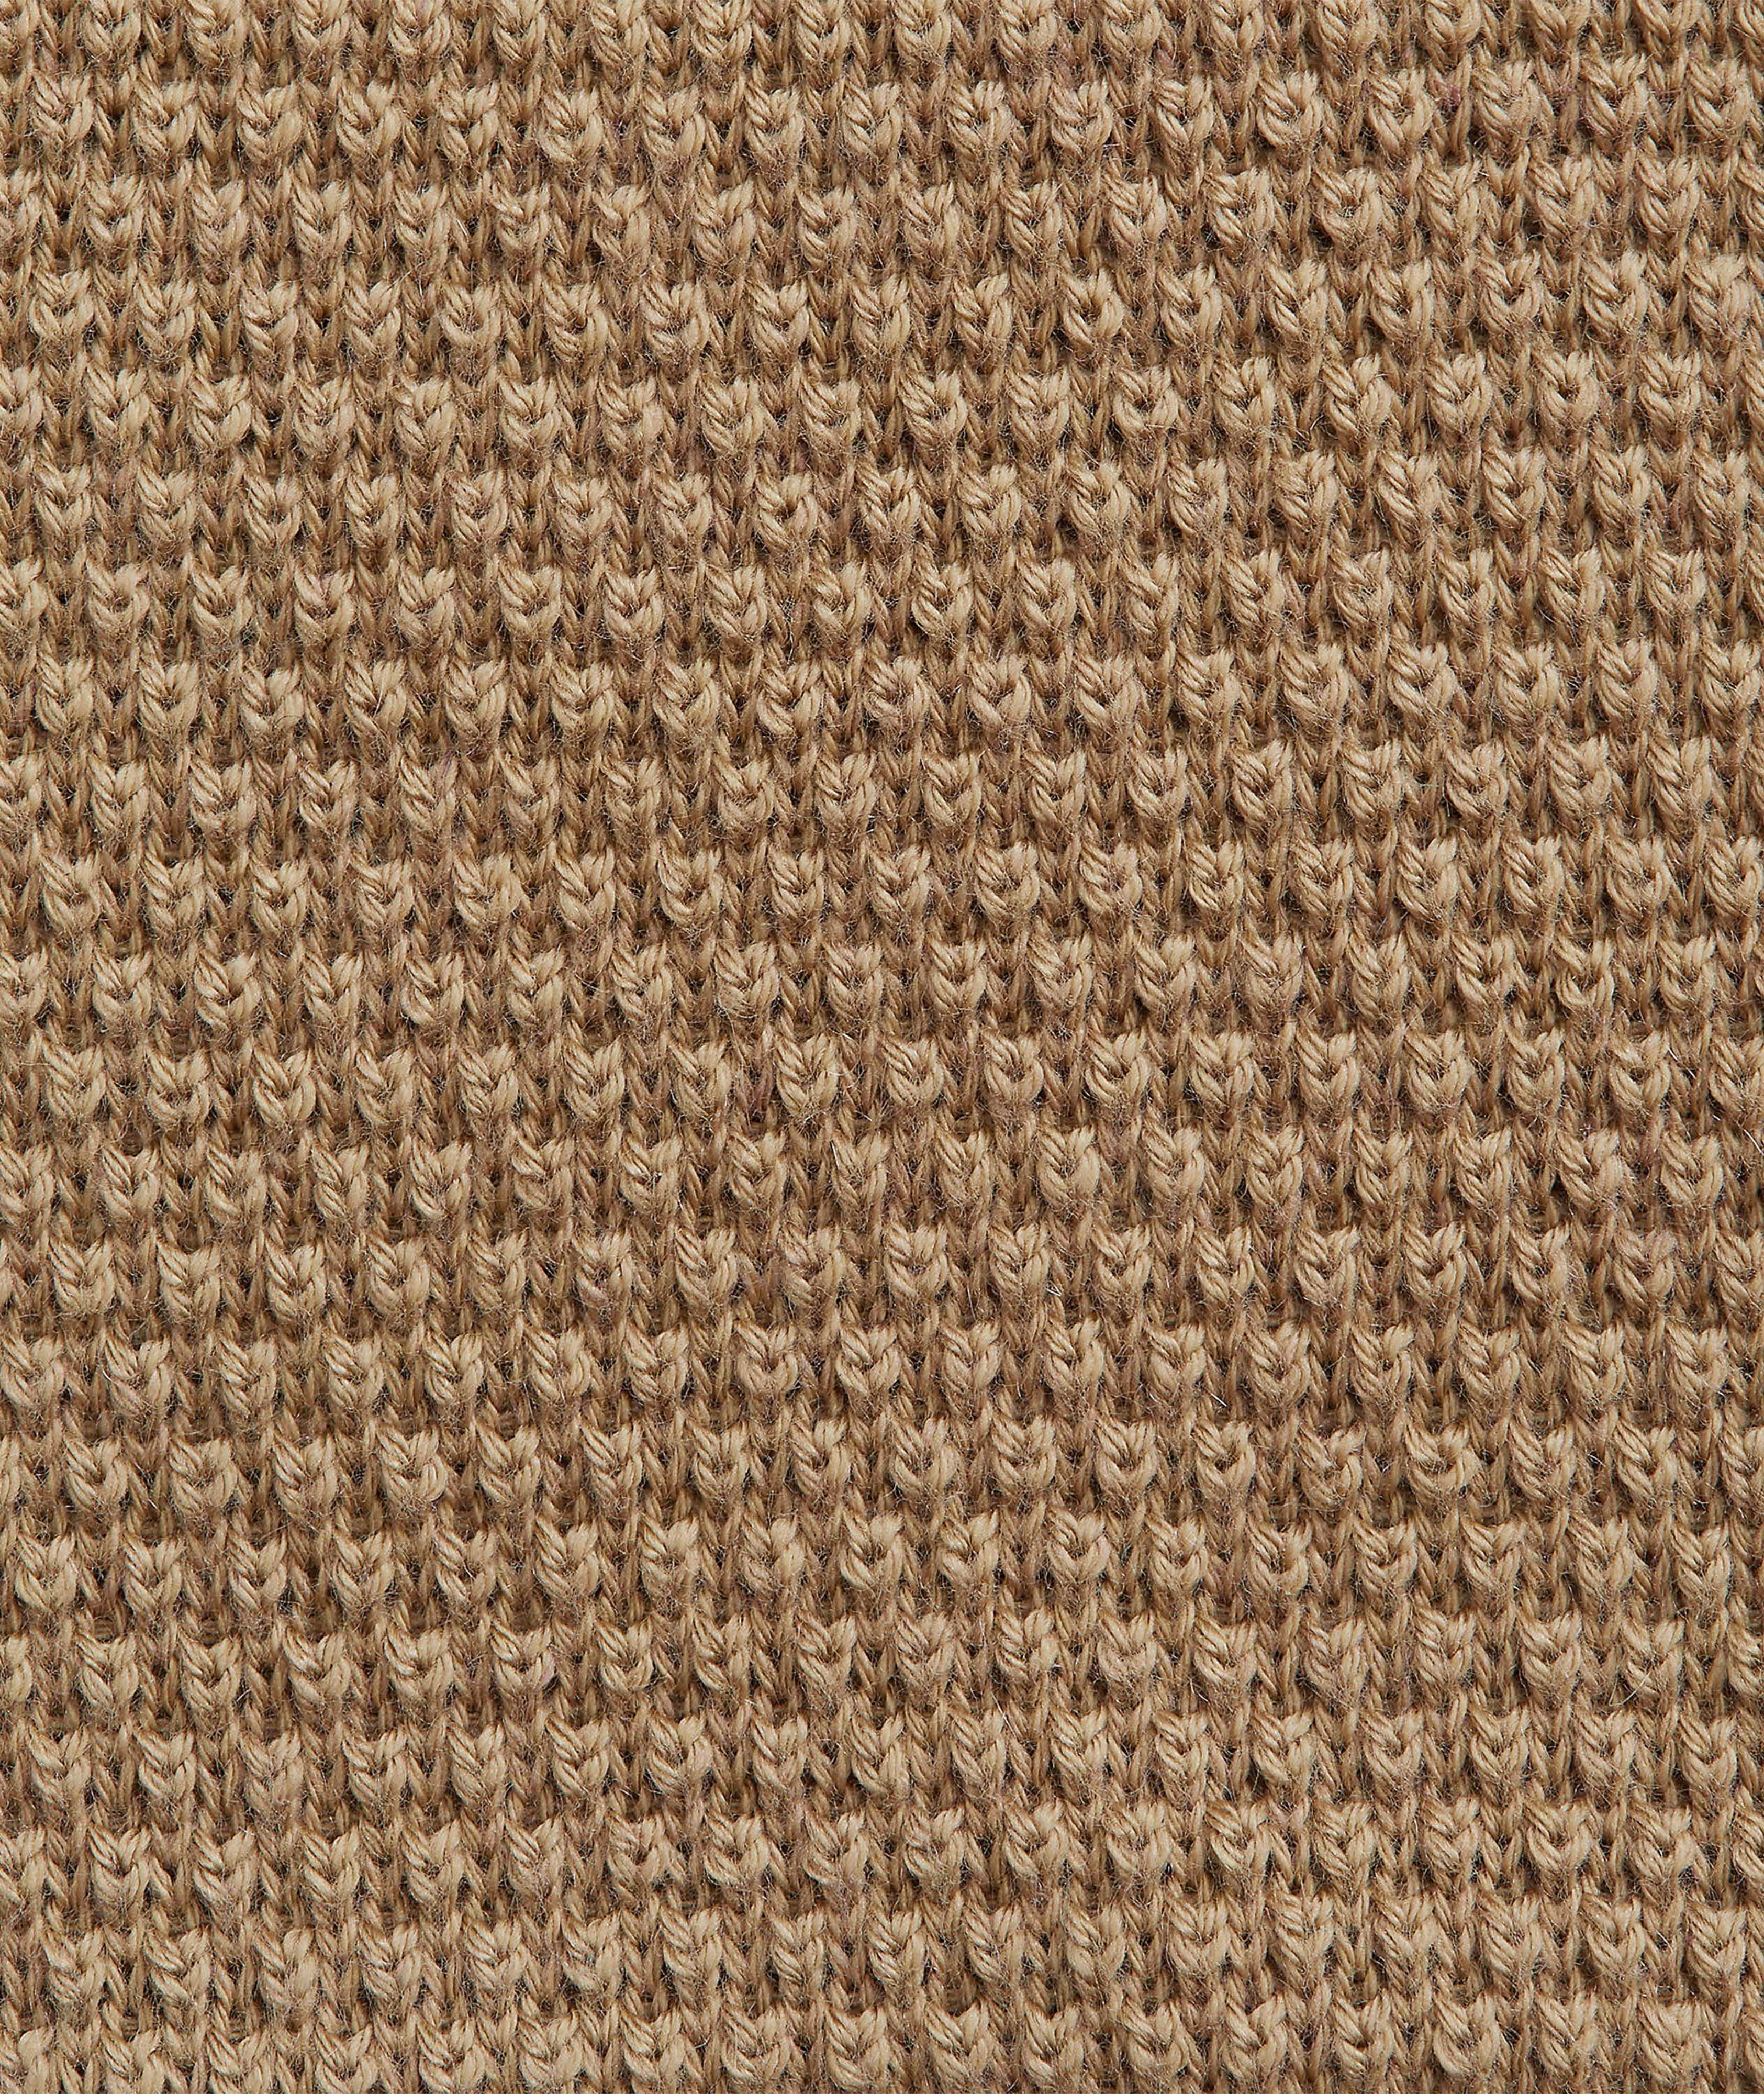 Woven Cotton-Cashmere Knit Tie image 2